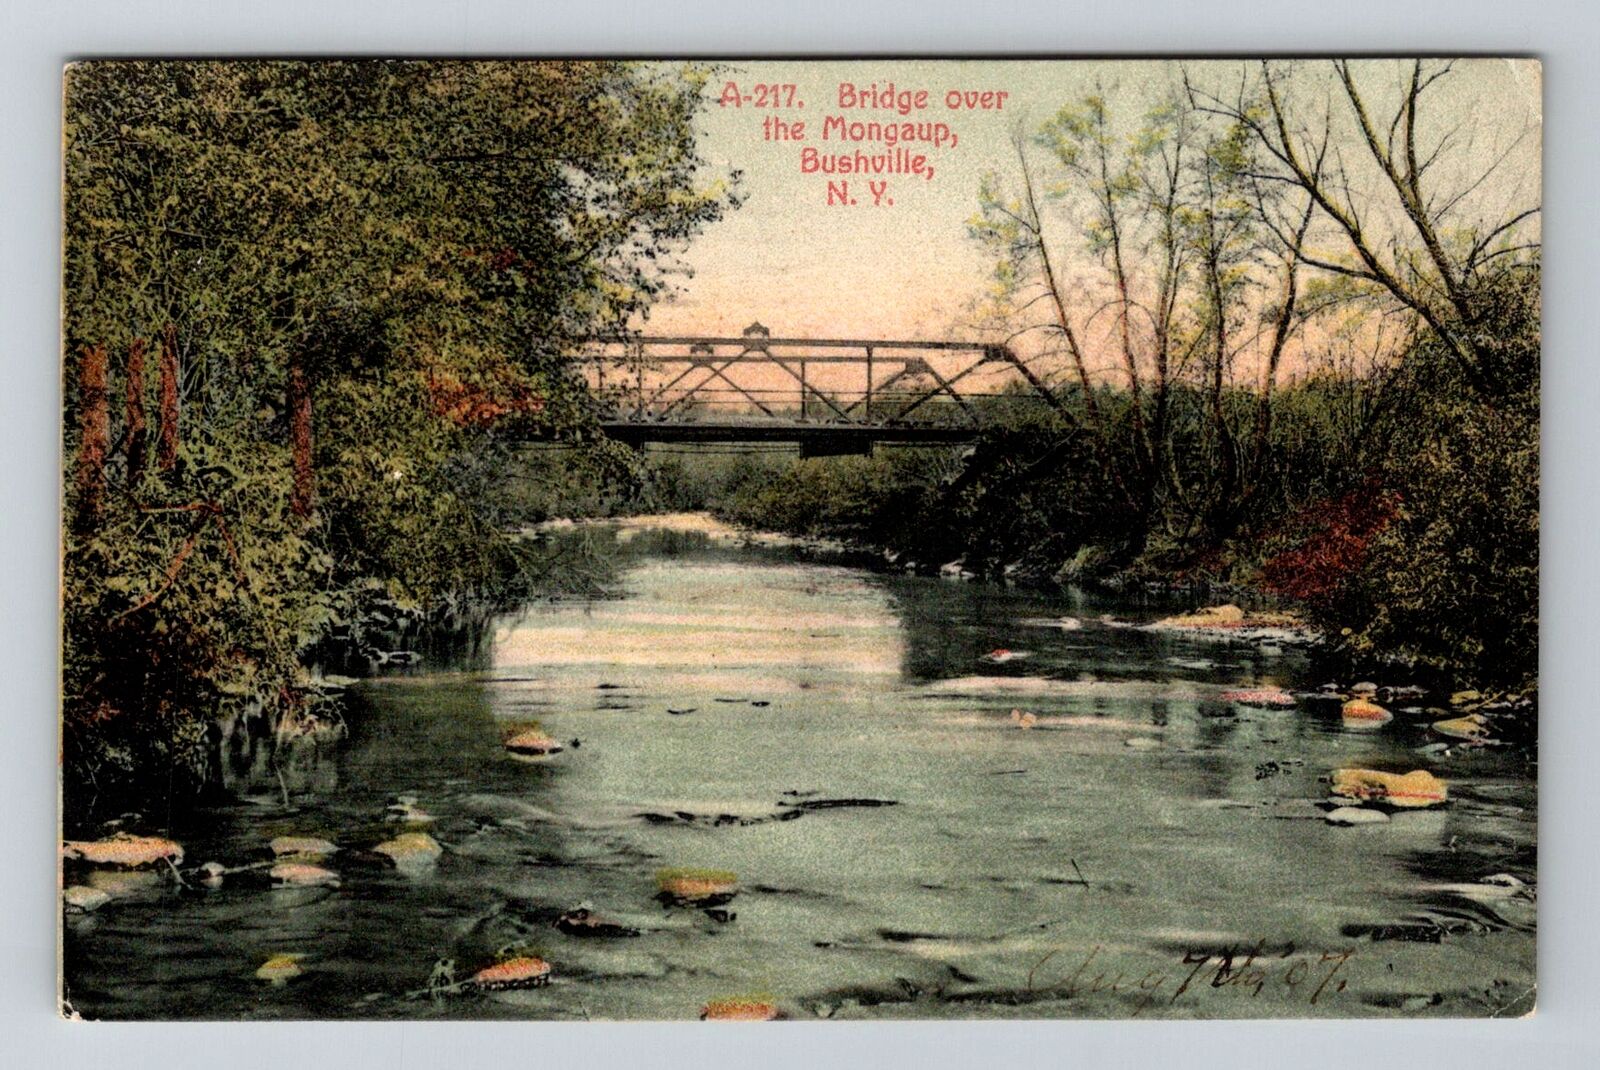 Bushville NY-New York, Bridge over the Mongaup, c1907 Vintage Souvenir Postcard